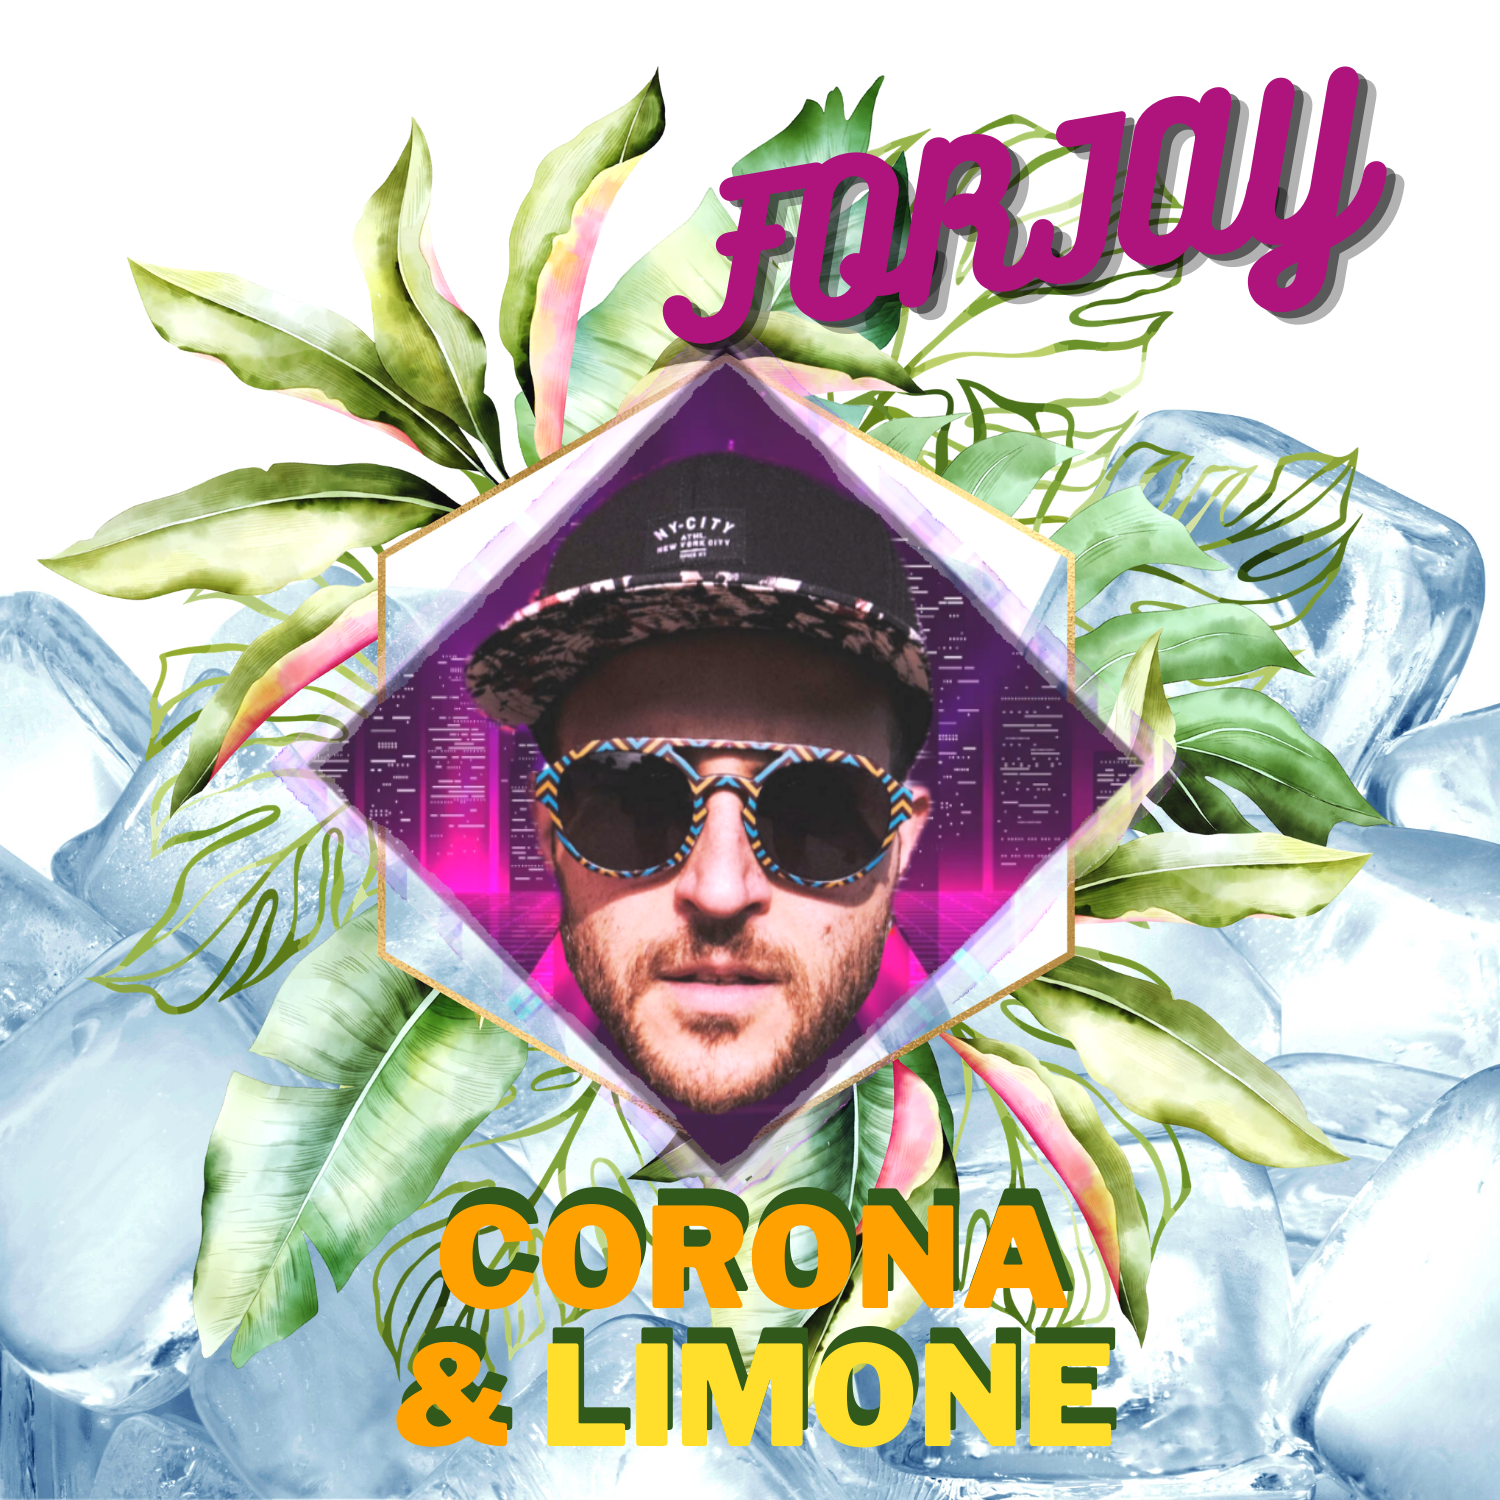 Corona e Limone: scopriamo il nuovo singolo di Forjay dal sapore estivo